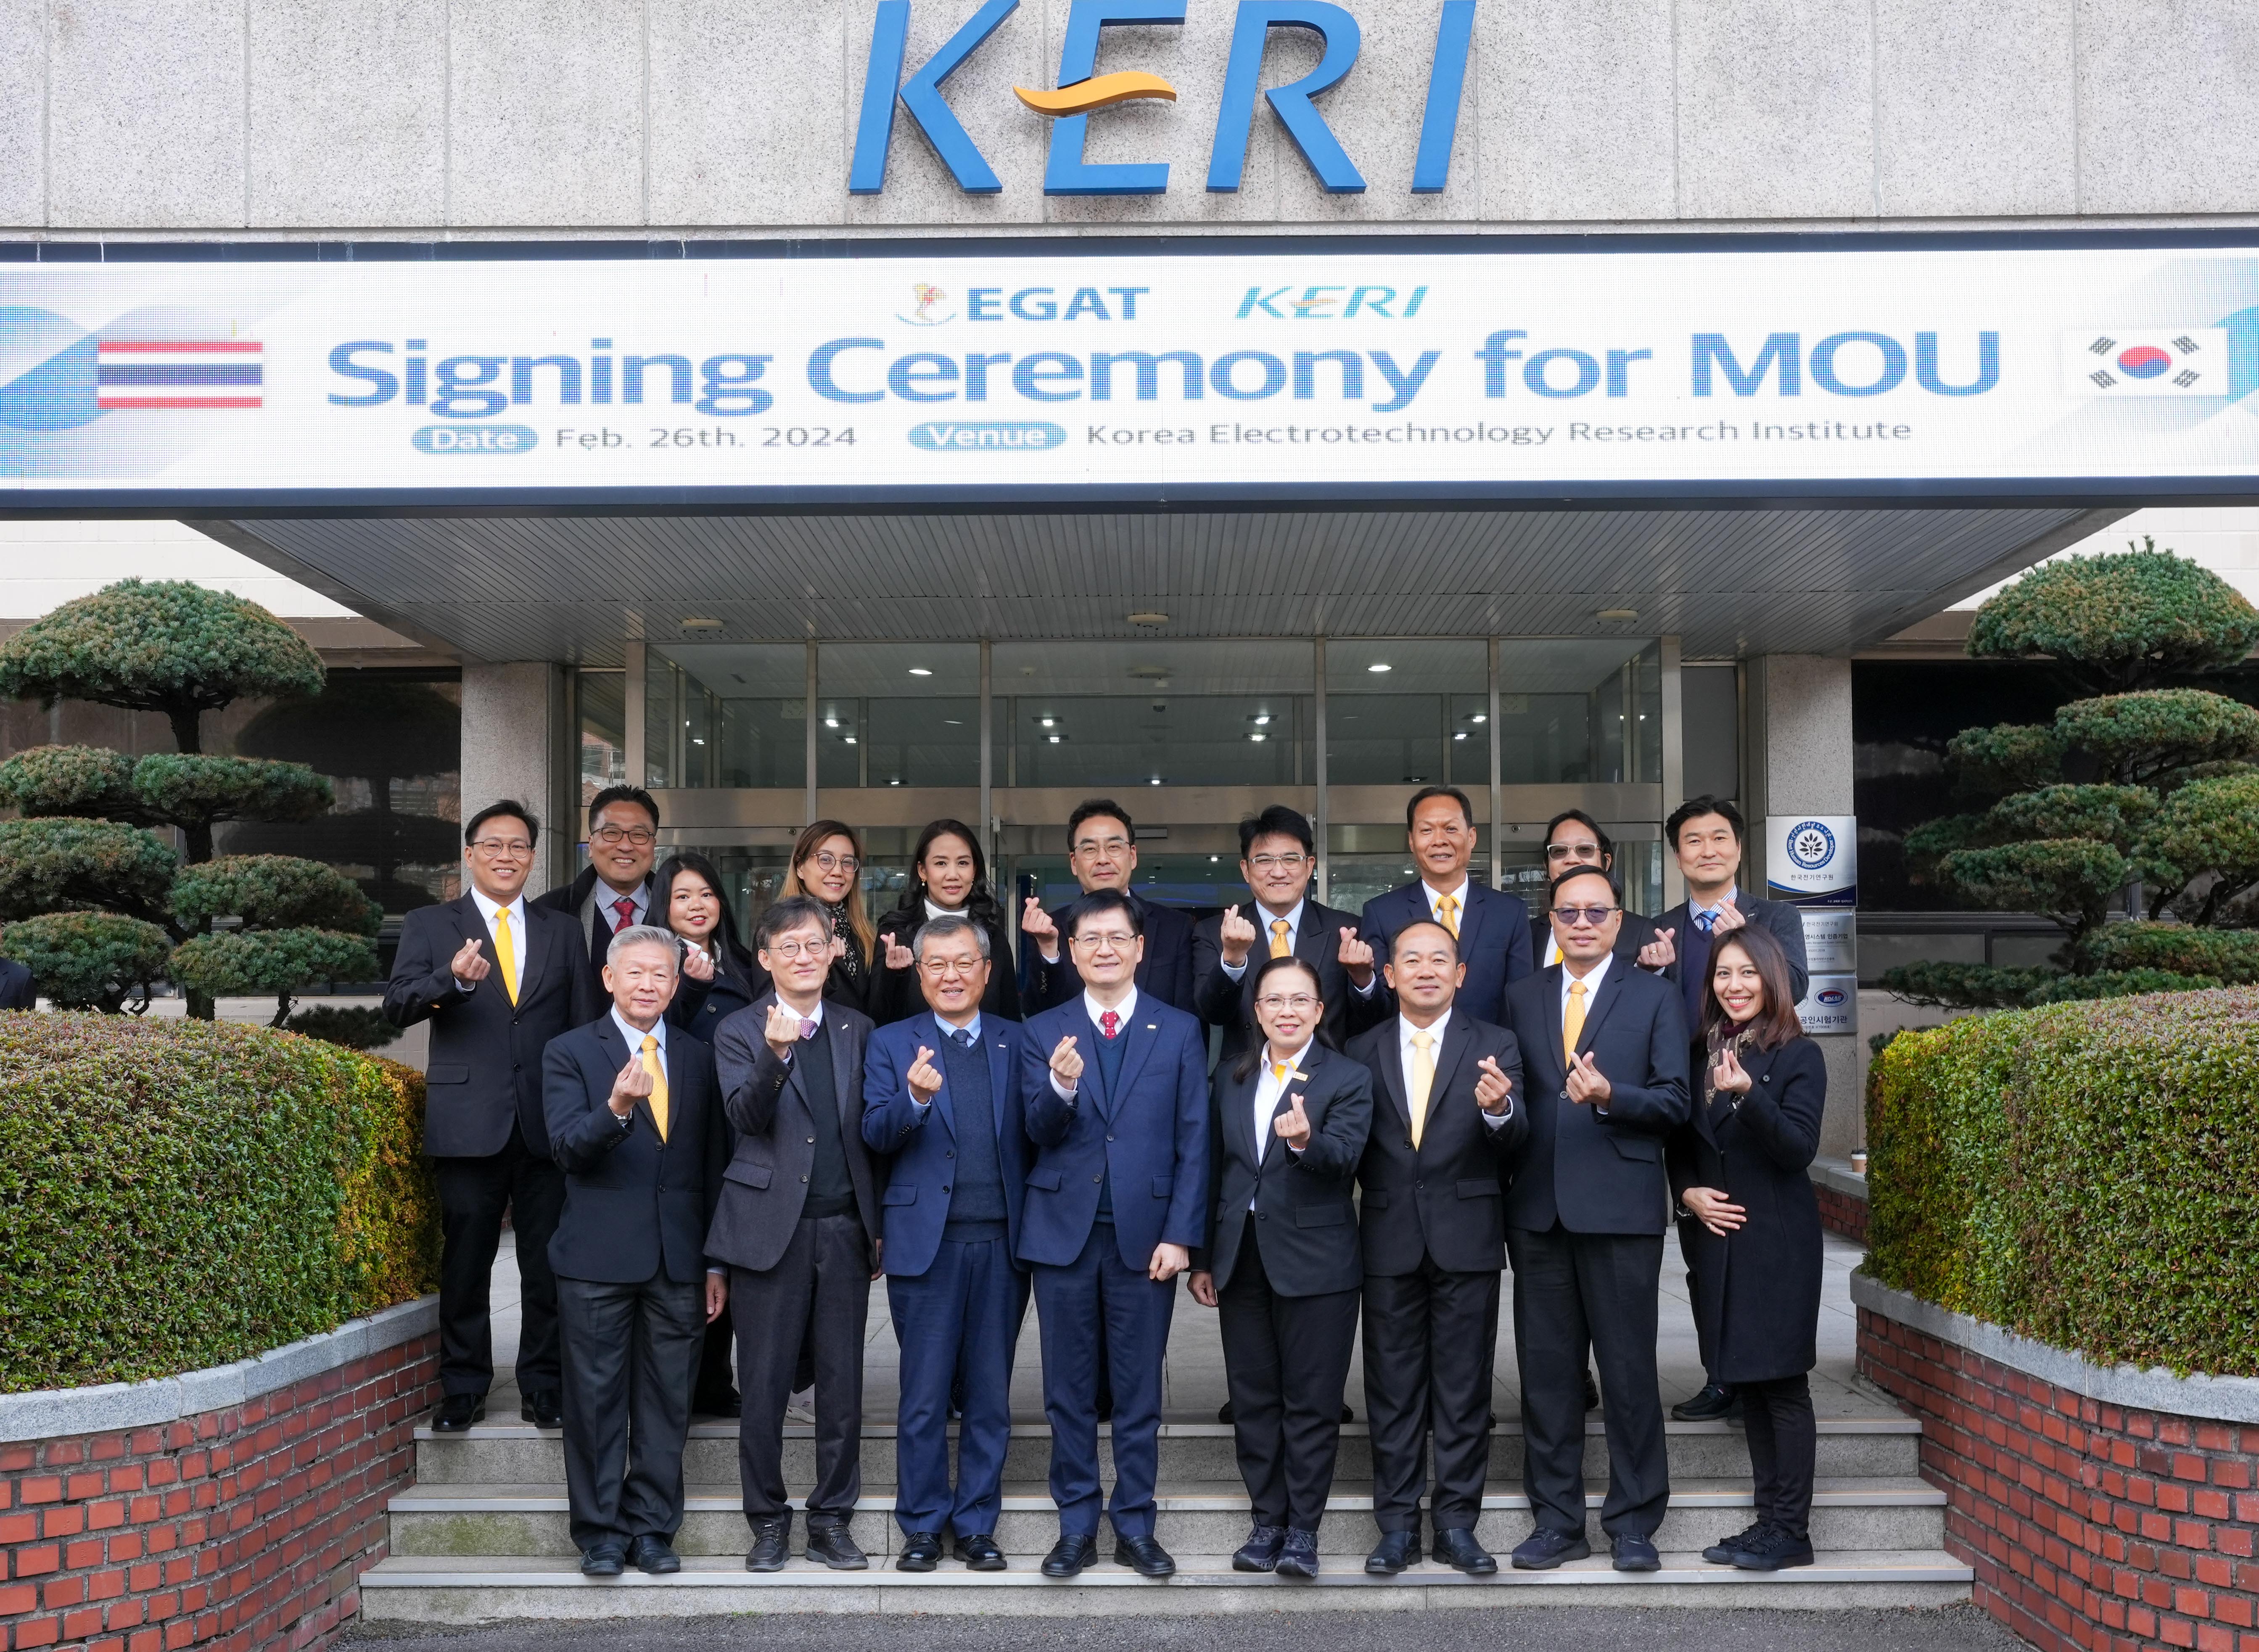 กฟผ. ลงนาม MOU เพิ่มศักยภาพ “ห้องปฏิบัติการทดสอบอุปกรณ์ไฟฟ้าแรงสูง (High Voltage Laboratory)” กับสถาบันวิจัยชั้นนำด้านเทคโนโลยีไฟฟ้าประเทศเกาหลีใต้ 